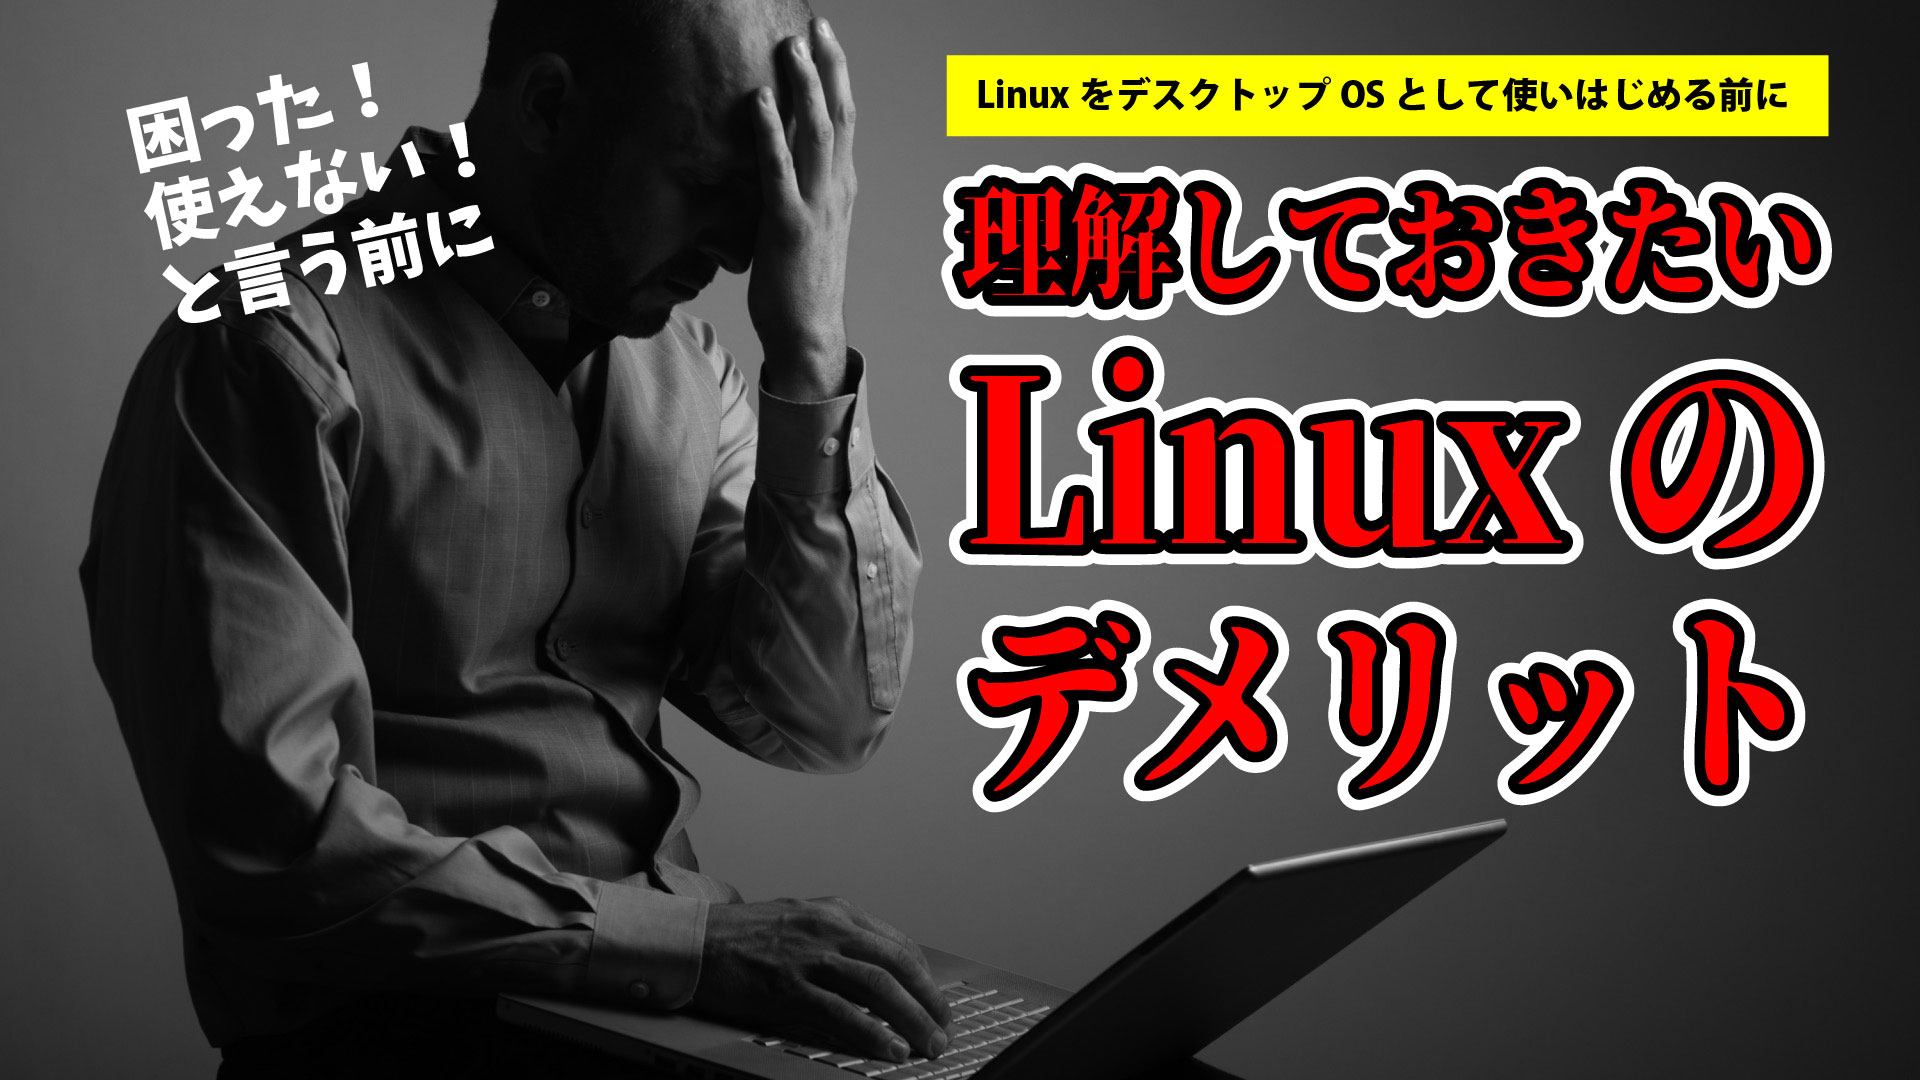 Linuxをはじめる前に理解しておきたいLinuxのおもなデメリット。